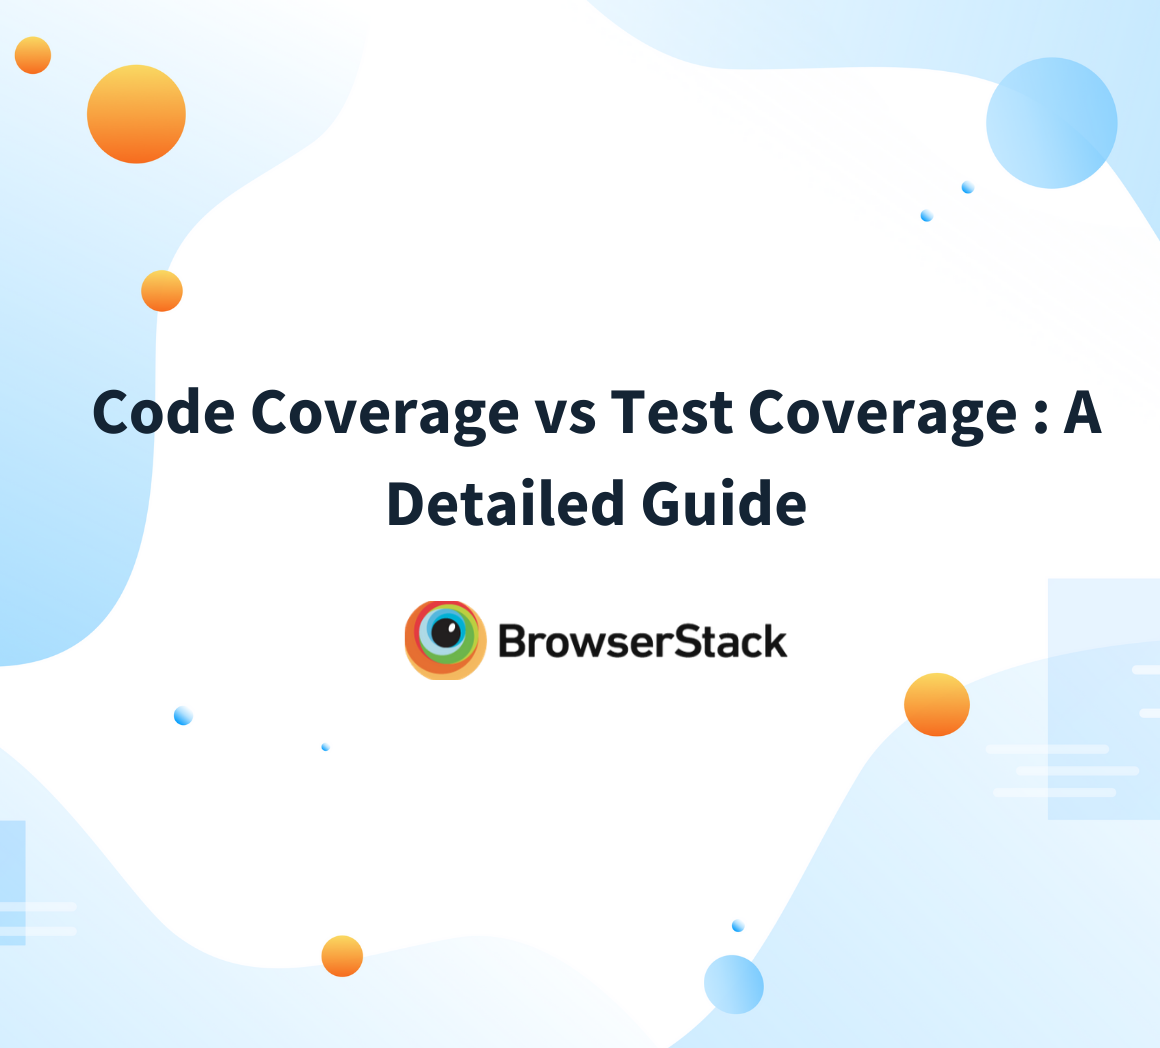 Code coverage vs test coverage